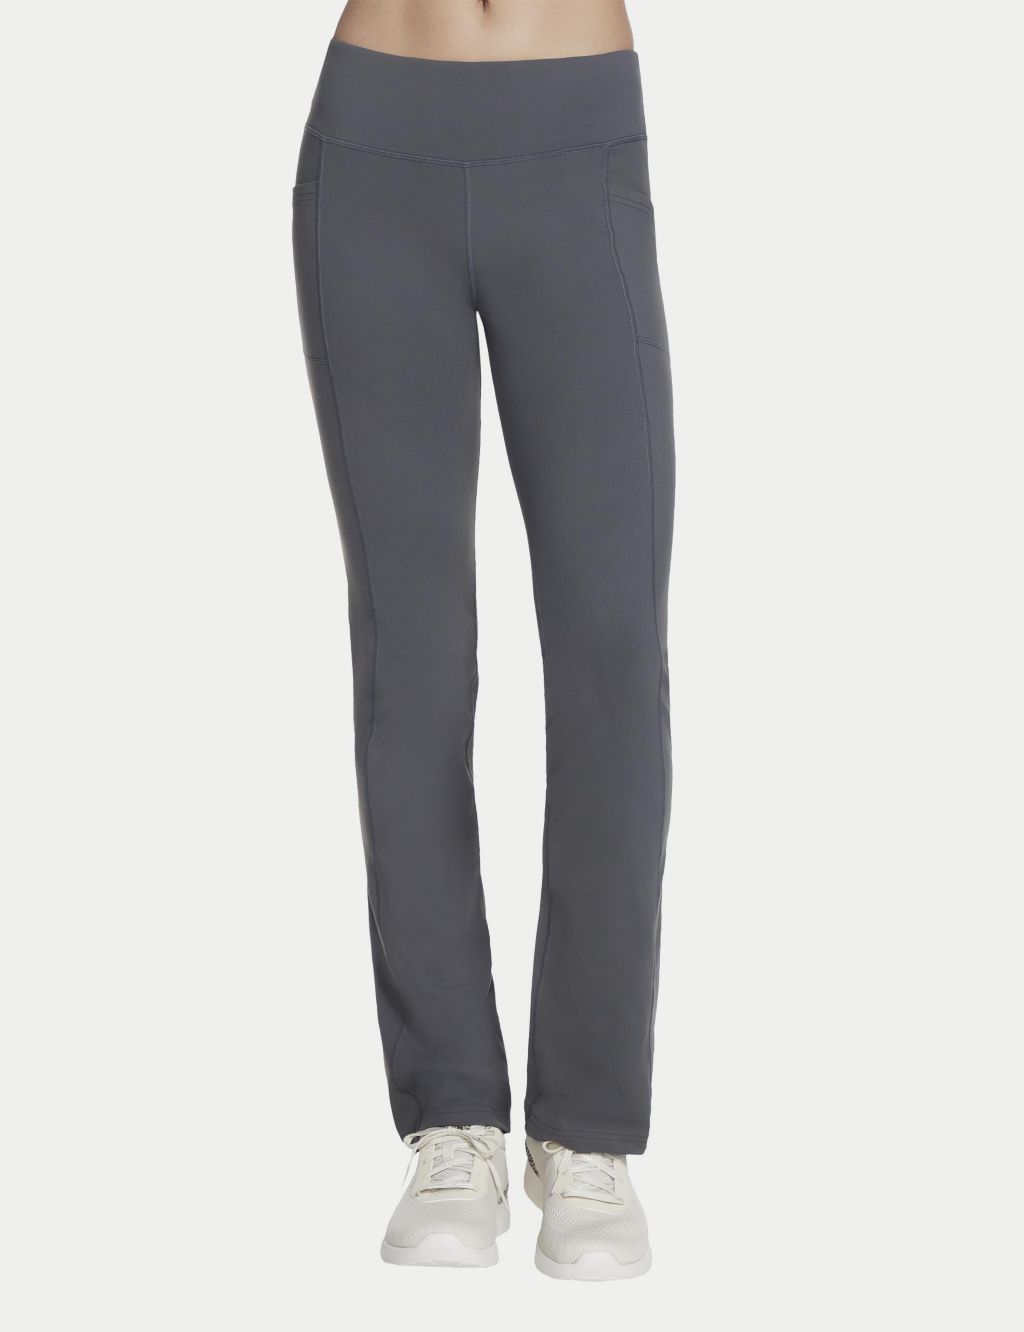 Buy Skechers womens printed hidden pocket long leggings grey Online